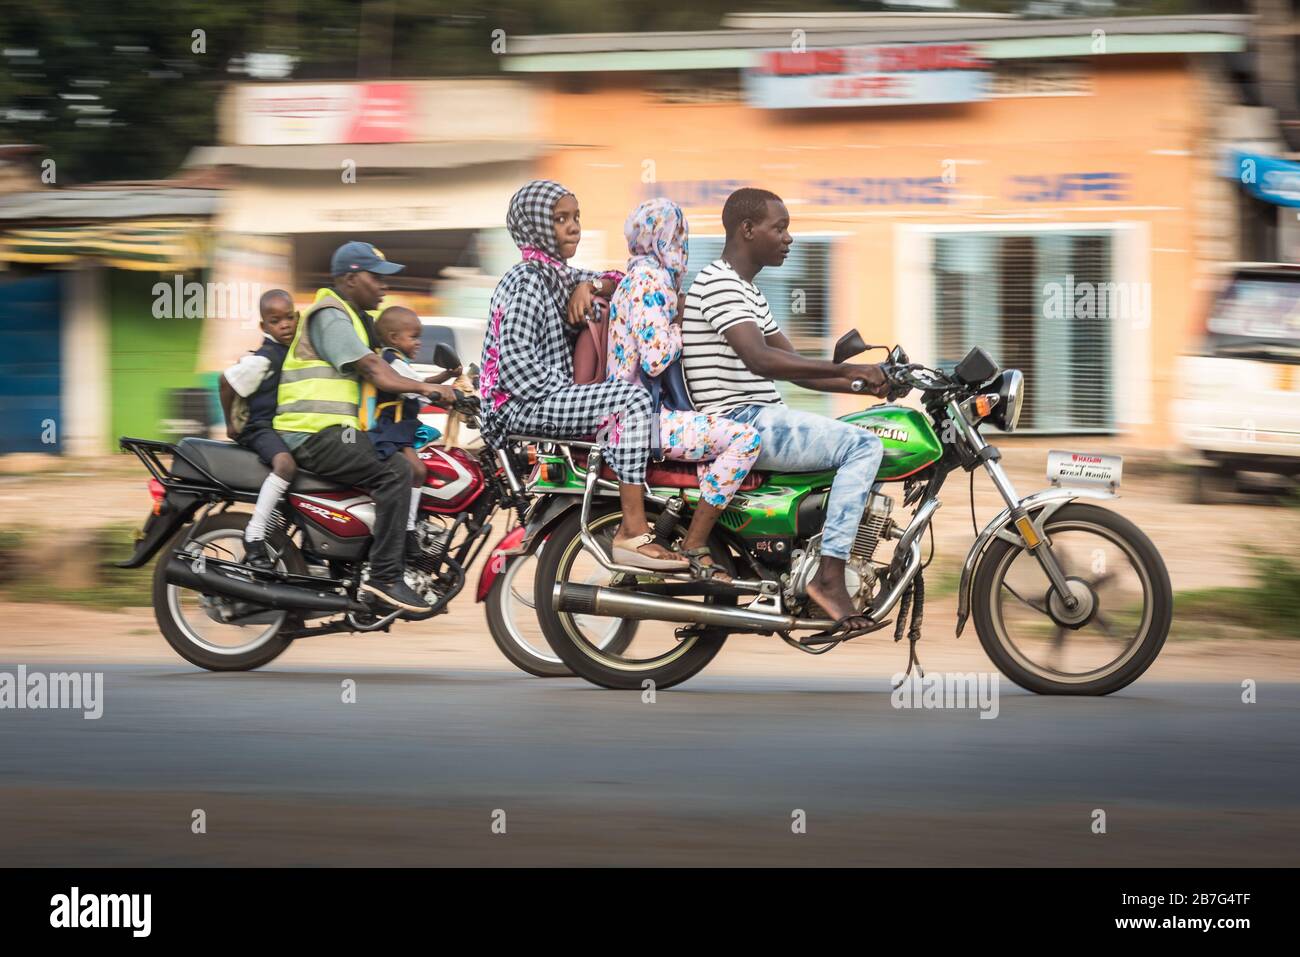 Ukunda / Afrika - 6. März 2020: Motorradverkehr auf den Straßen von Ukunda Kenia Afrika. Schwarze Leute auf den Motorrädern, die Fotos schwenken Stockfoto